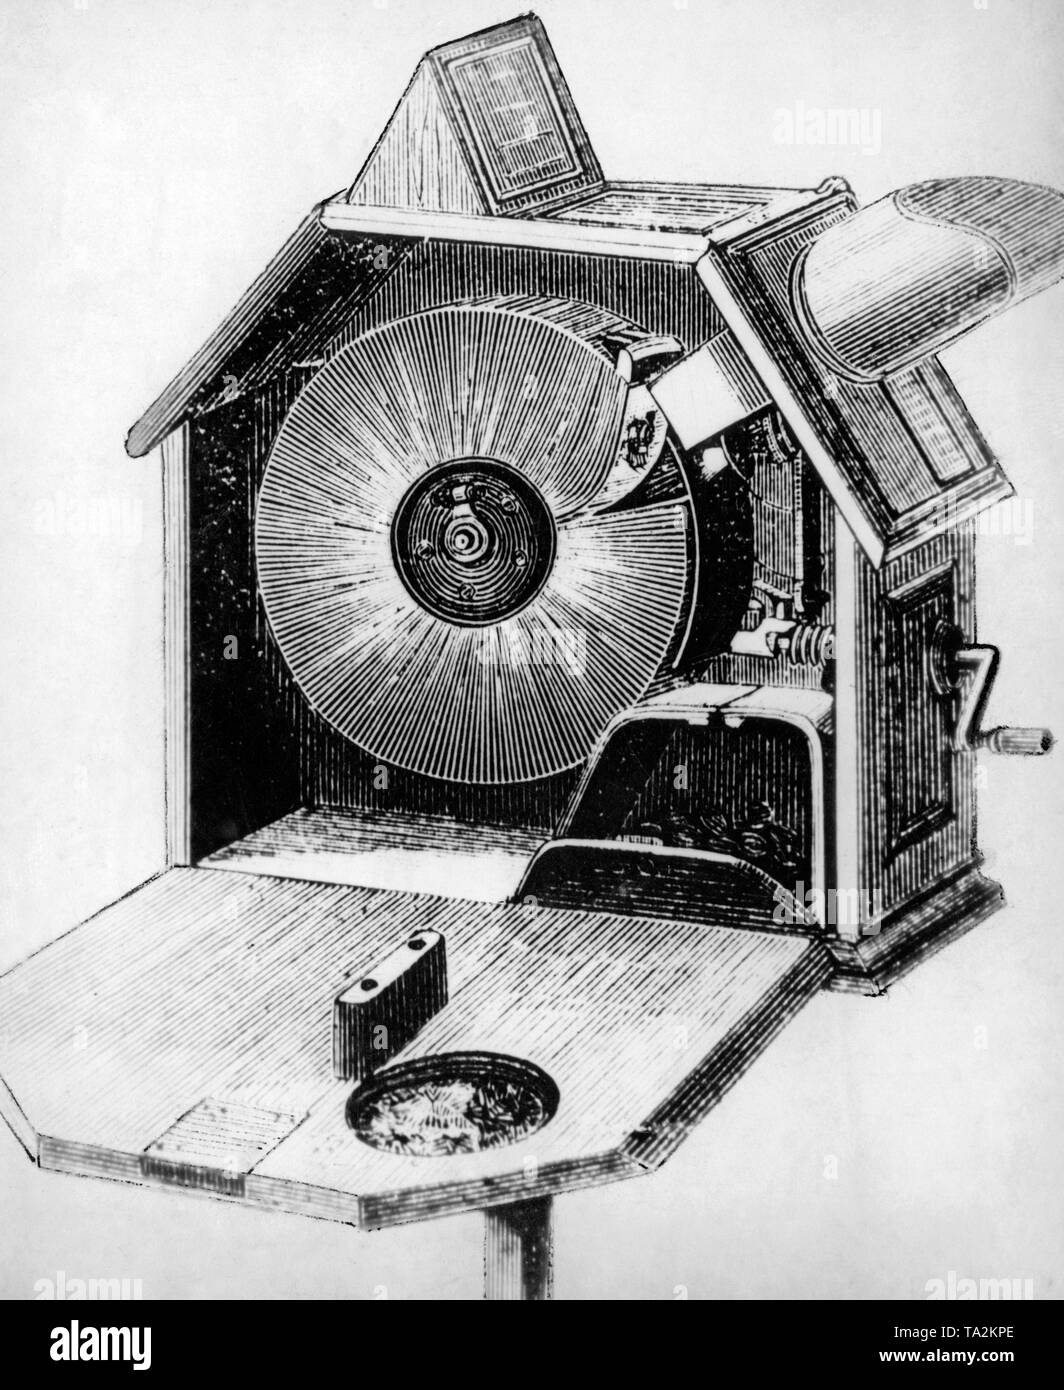 Foto von Edisons kinetoscope entwickelt, 1891/92 von William Kennedy Laurie Dickinson und Chief Engineer Edinson. Dies ist die erste Viewer, ein Gerät für die Wiedergabe von Filmen ohne Schleier. Edinson des Kinetoscope wurde zuerst am Columbian Exposition der Welt in Chicago, 1893 ausgestellt. Stockfoto